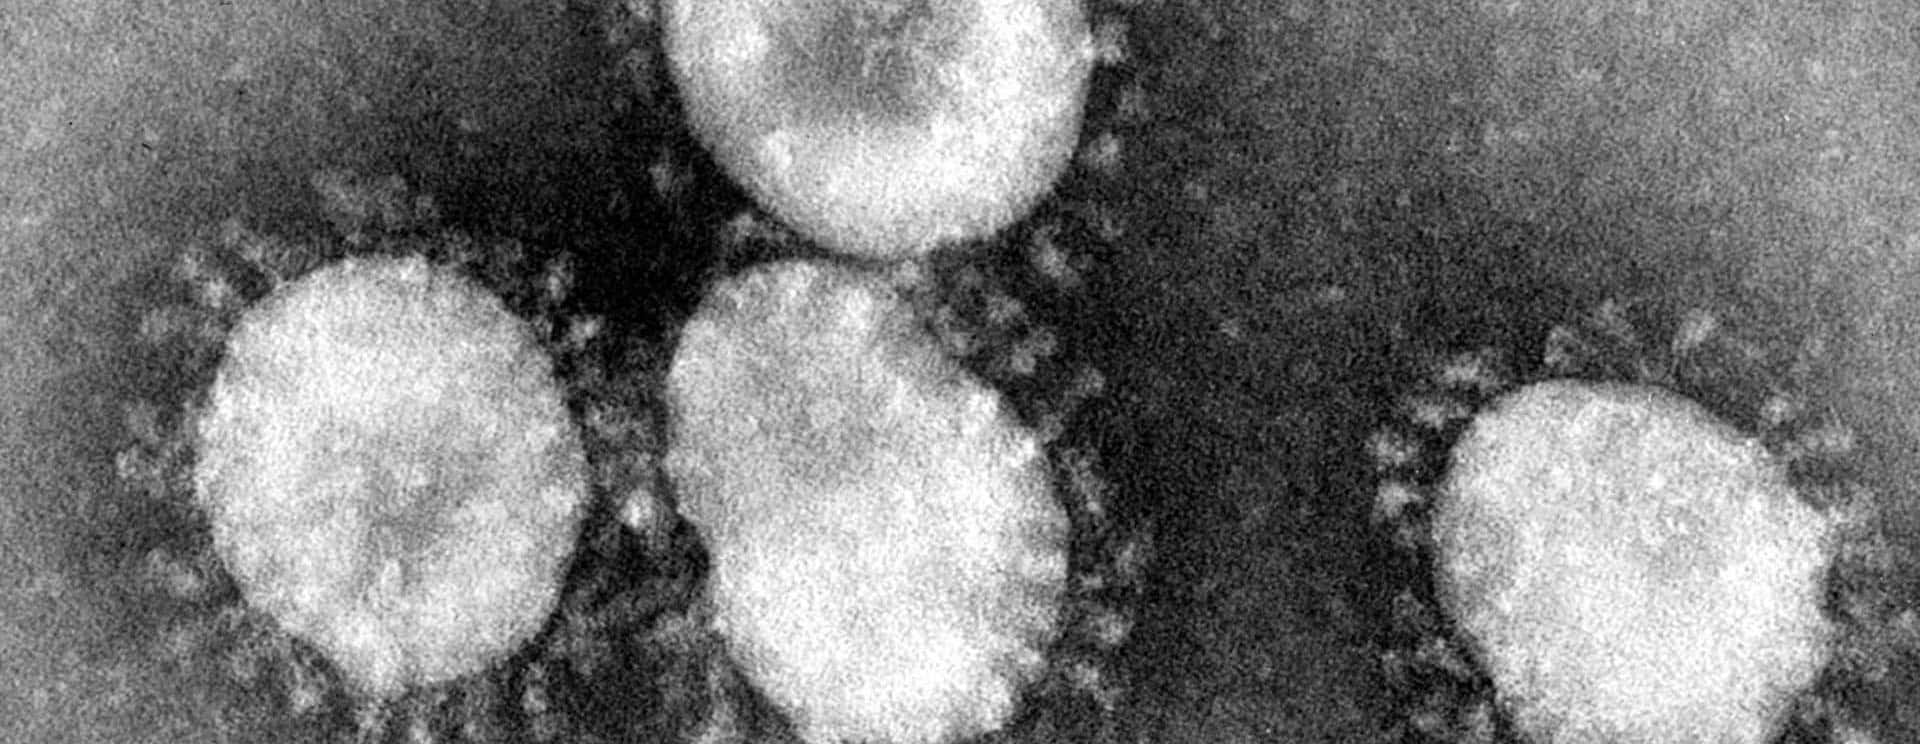 coronaviruses-jpg-87